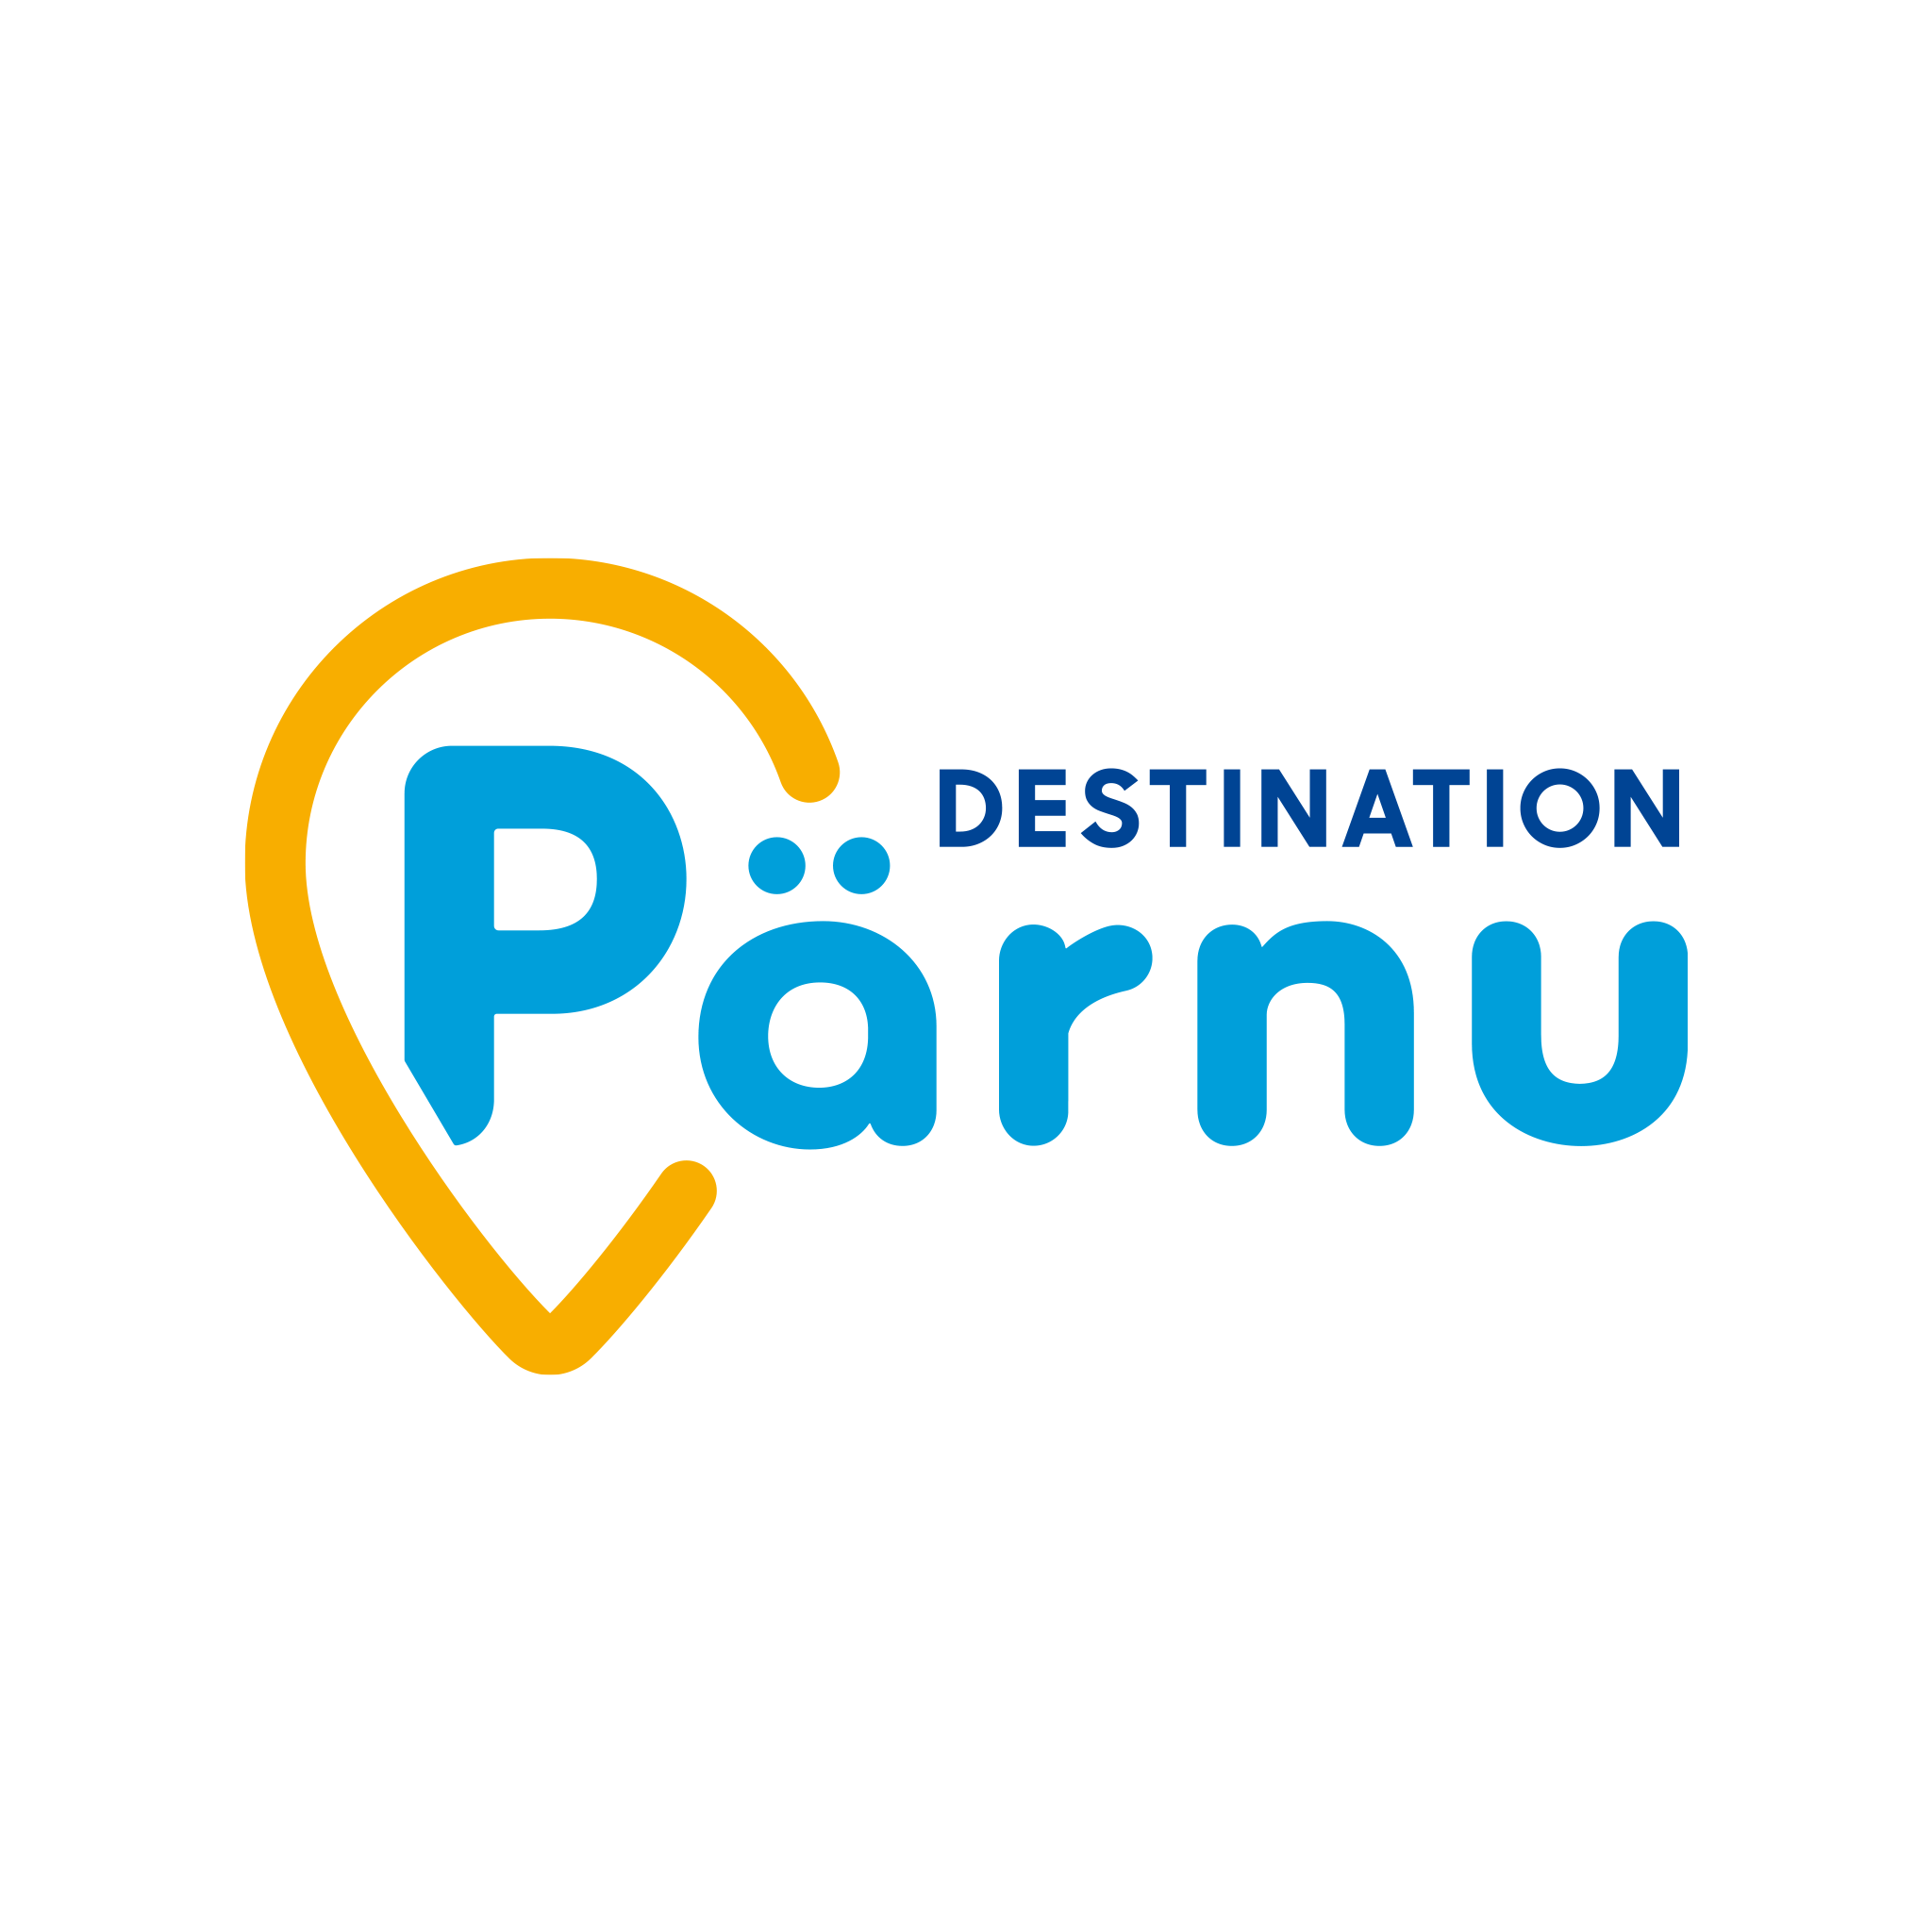 Destination Pärnu